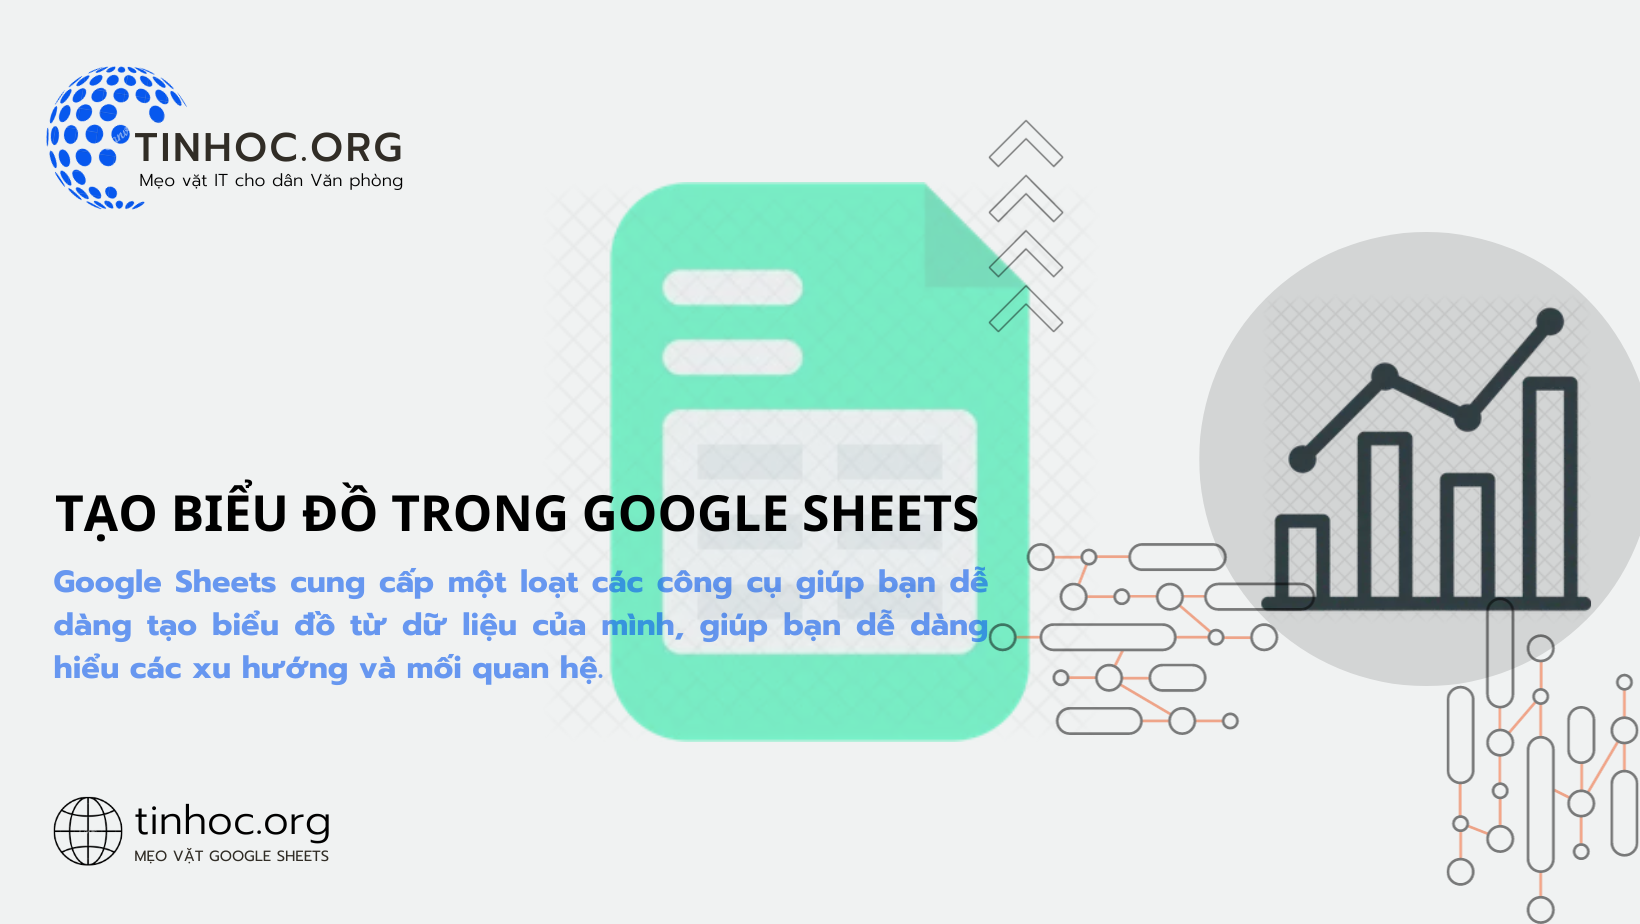 Google Sheets cung cấp một loạt các công cụ giúp bạn dễ dàng tạo biểu đồ từ dữ liệu của mình, giúp bạn dễ dàng hiểu các xu hướng và mối quan hệ.